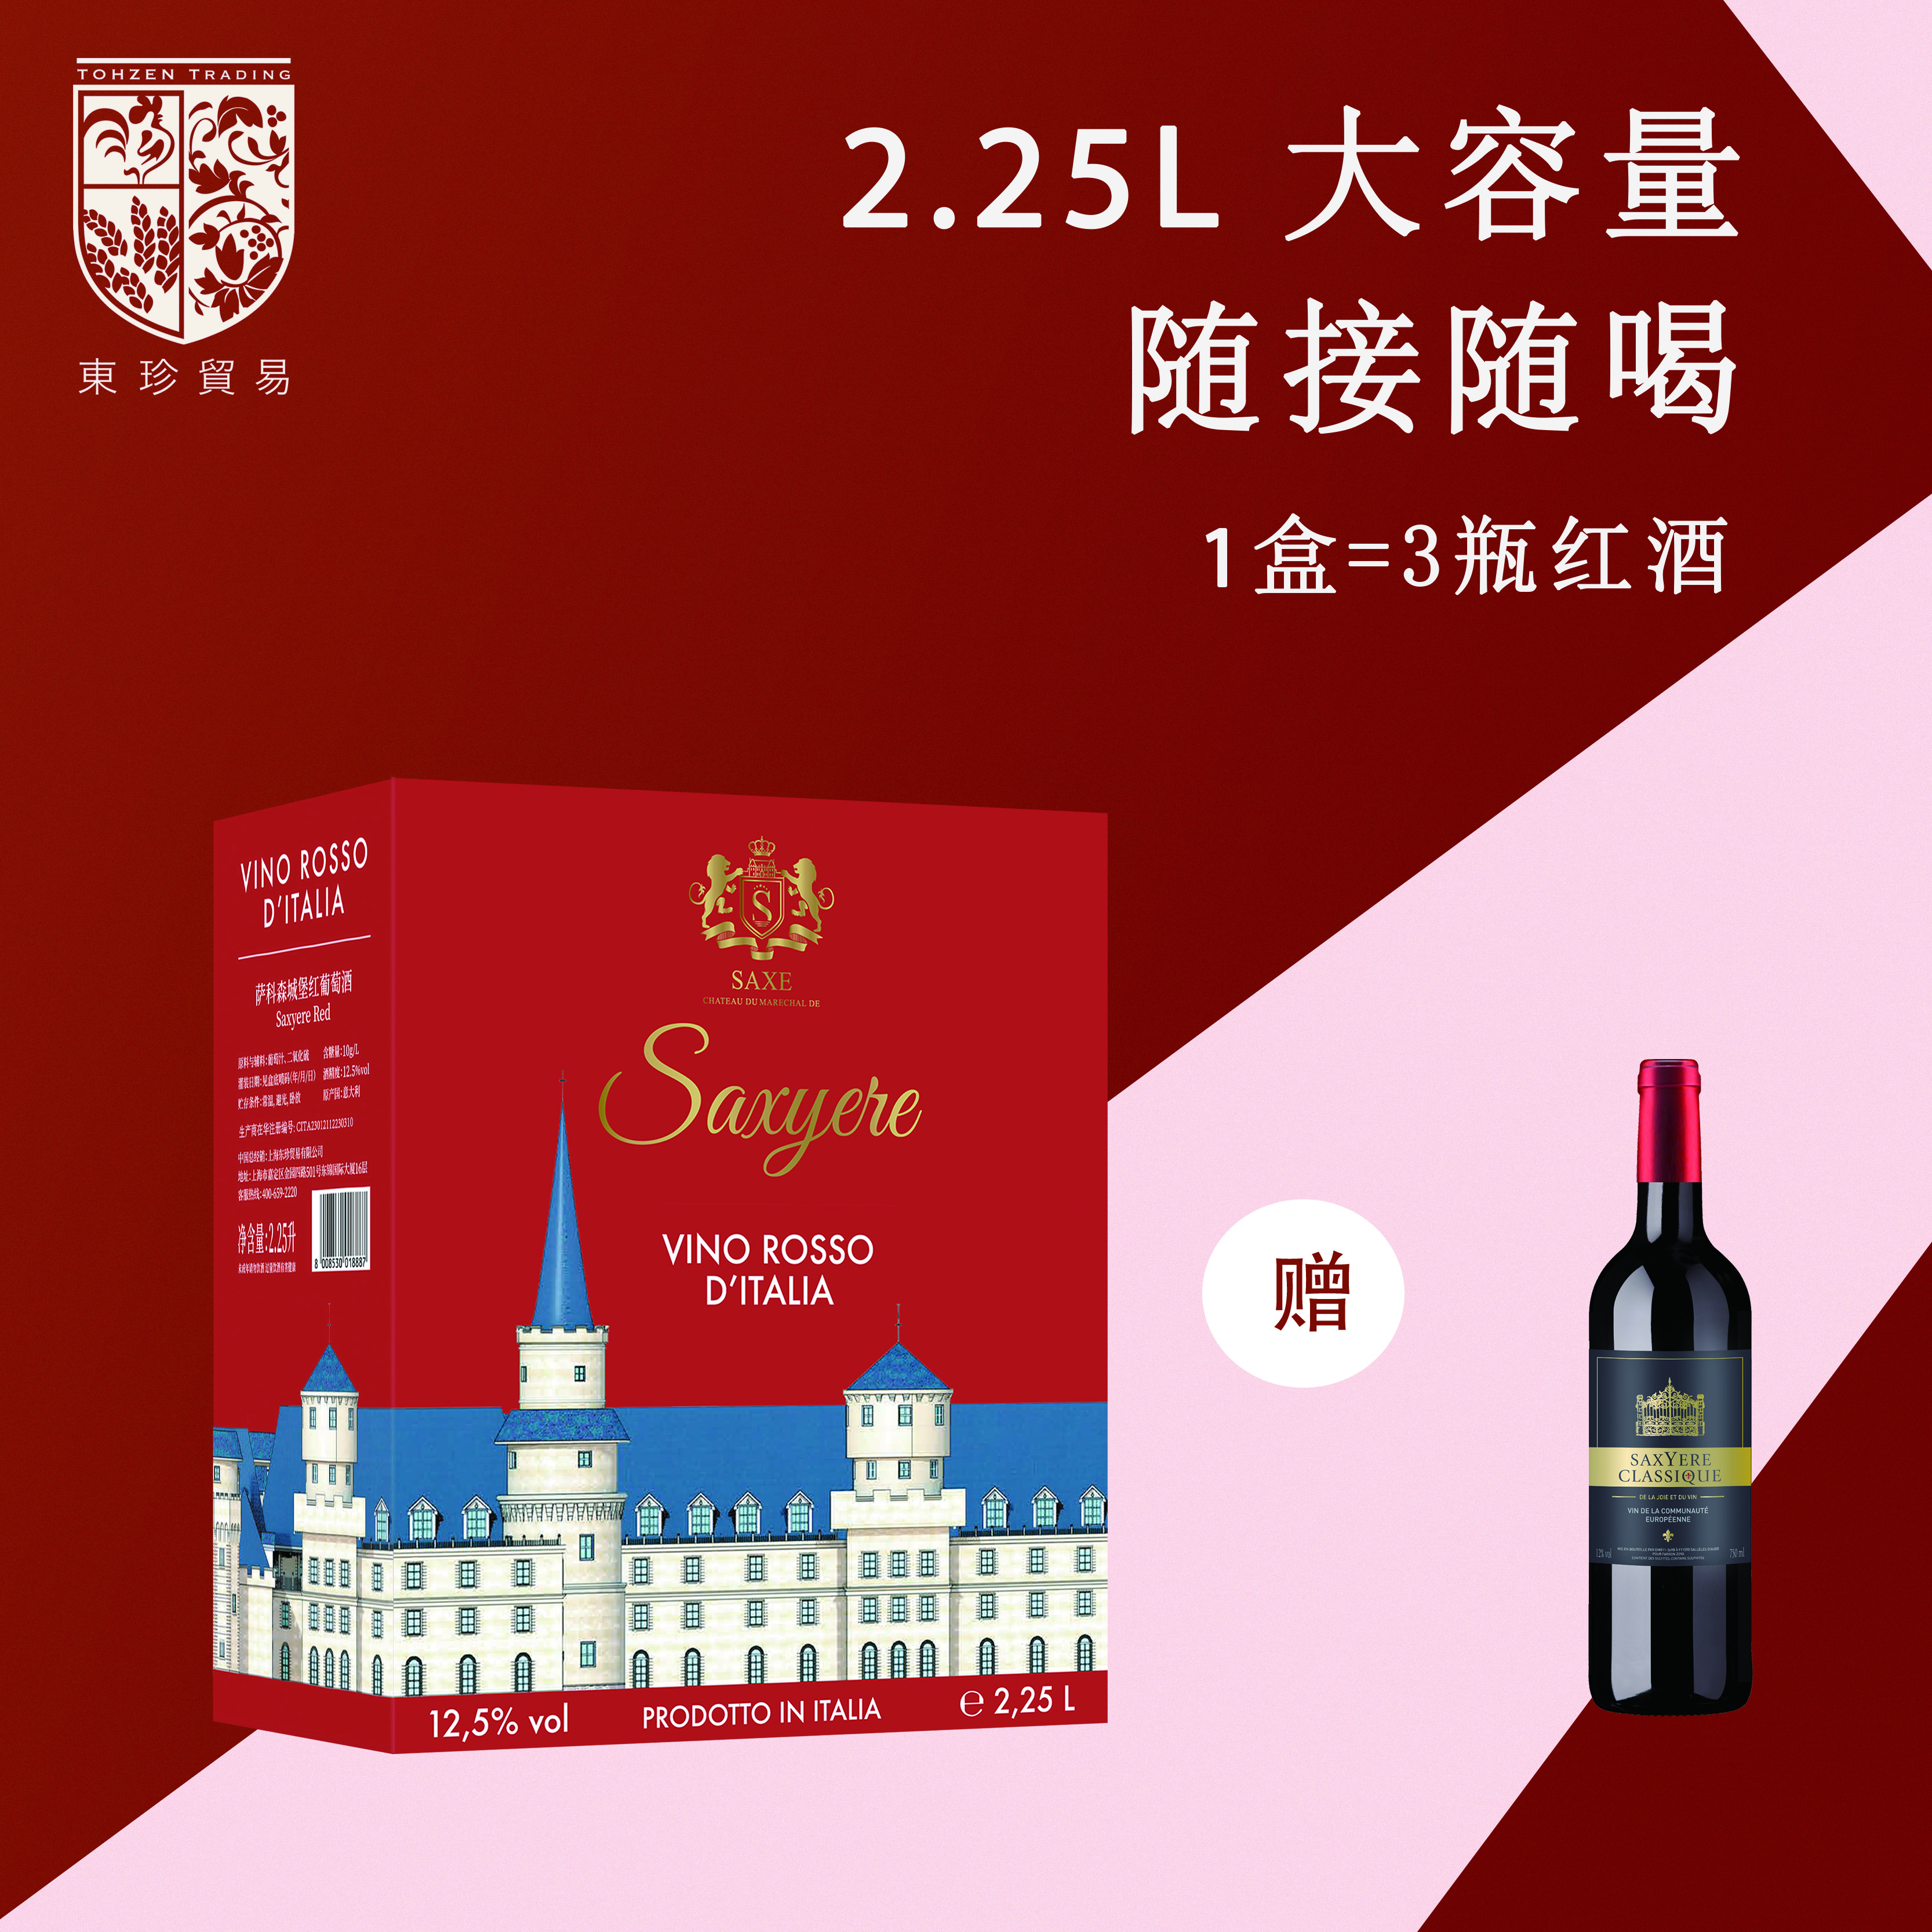 意大利原盒进口萨科森城堡红葡萄酒 2.25L家庭聚餐大盒